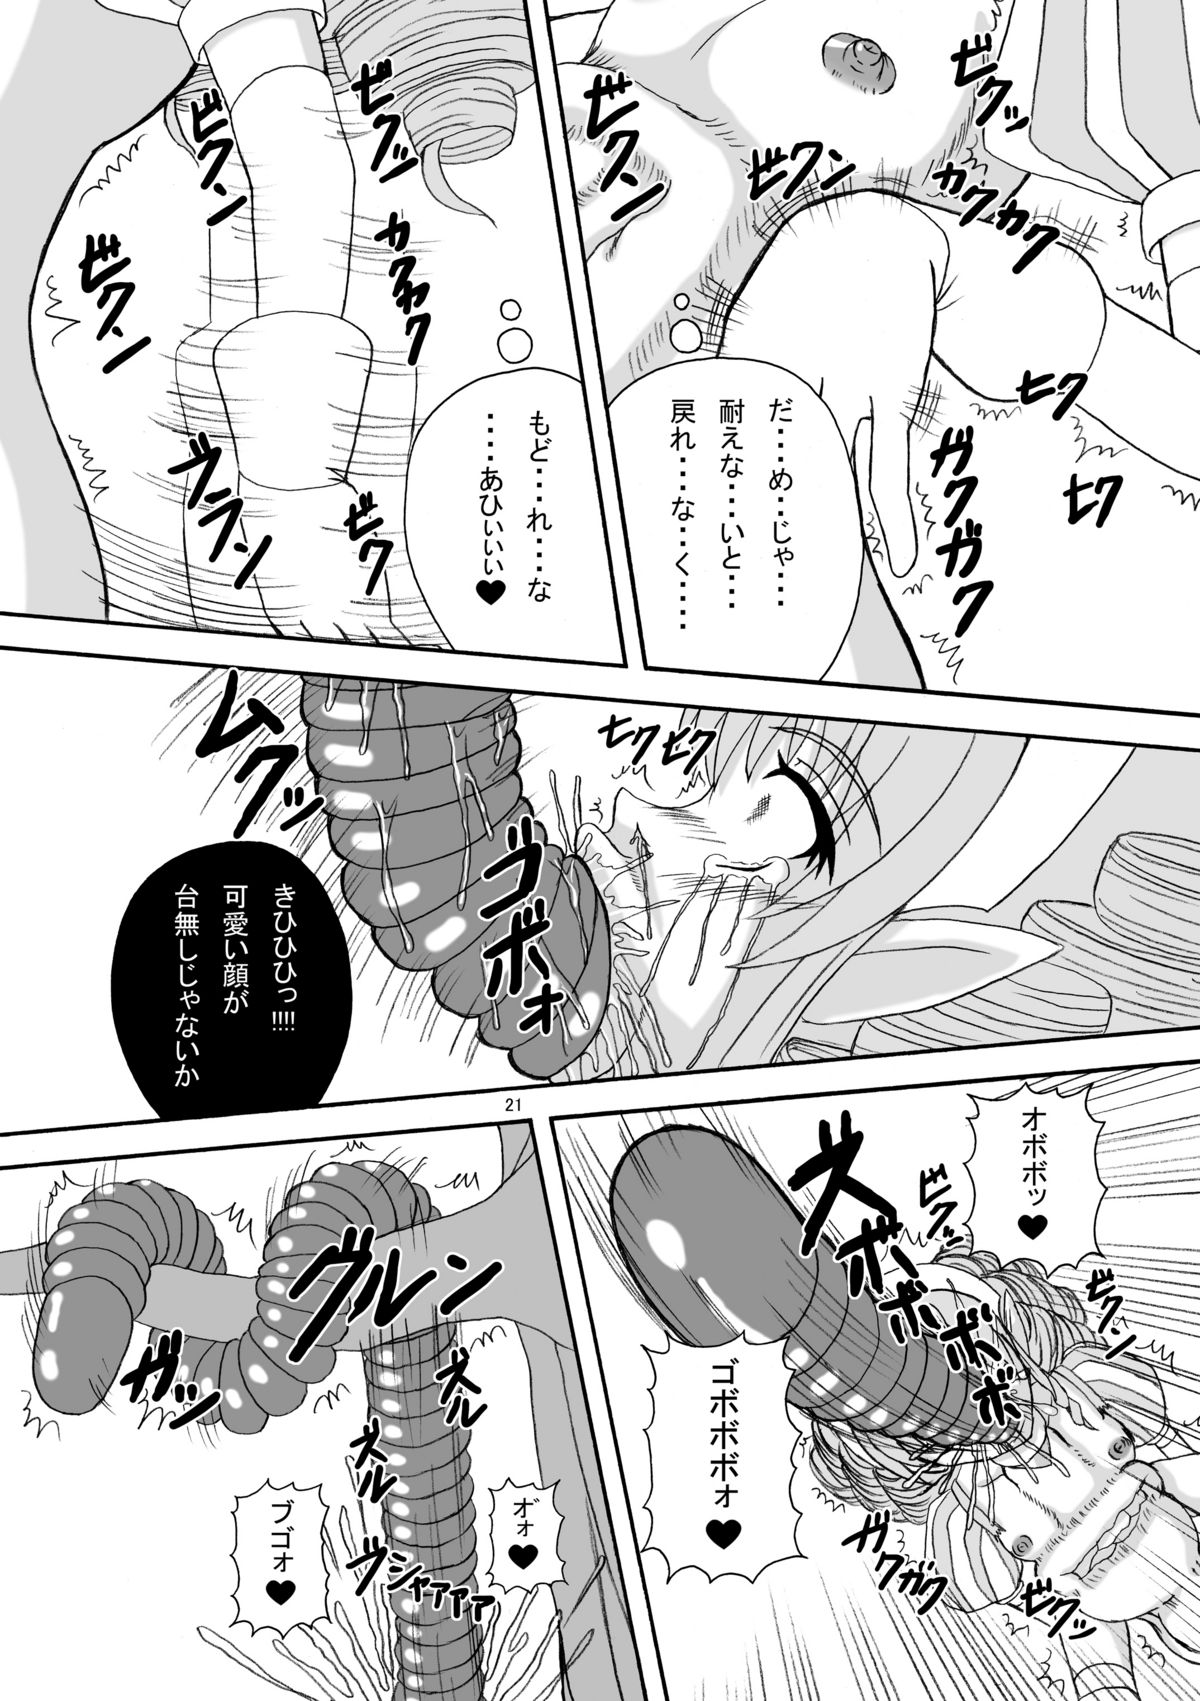 [Pint Size (Tenrai)] Hard Core Blade Ma Sawa Zenshin Kan (Queen's Blade) page 20 full